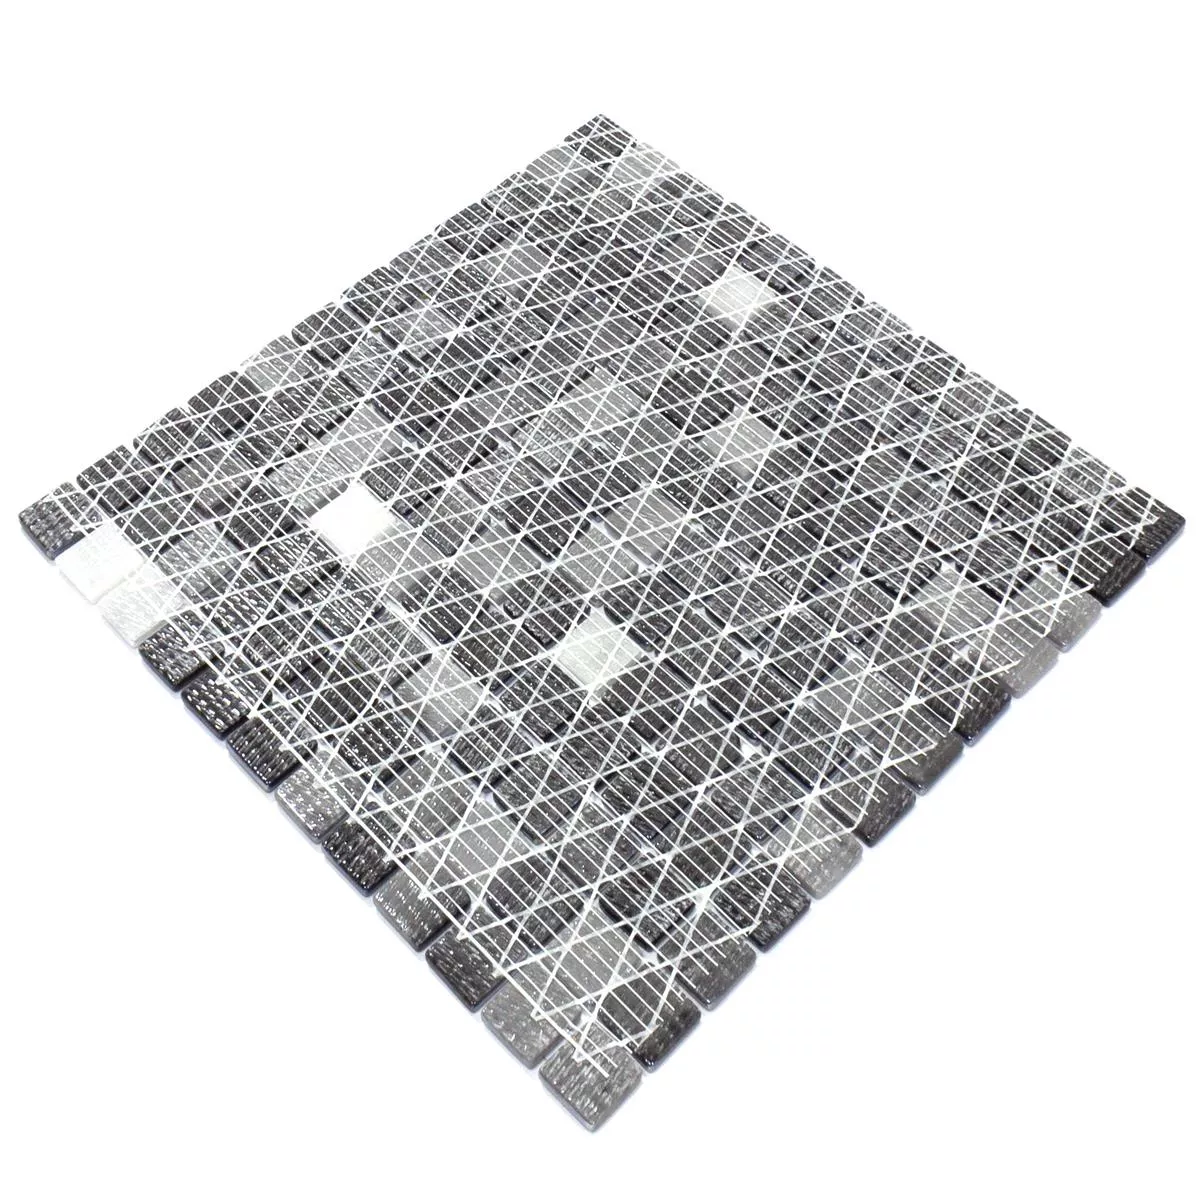 Skleněná Mozaika Dlaždice Silvertown Antracitová Metallic 25x25mm